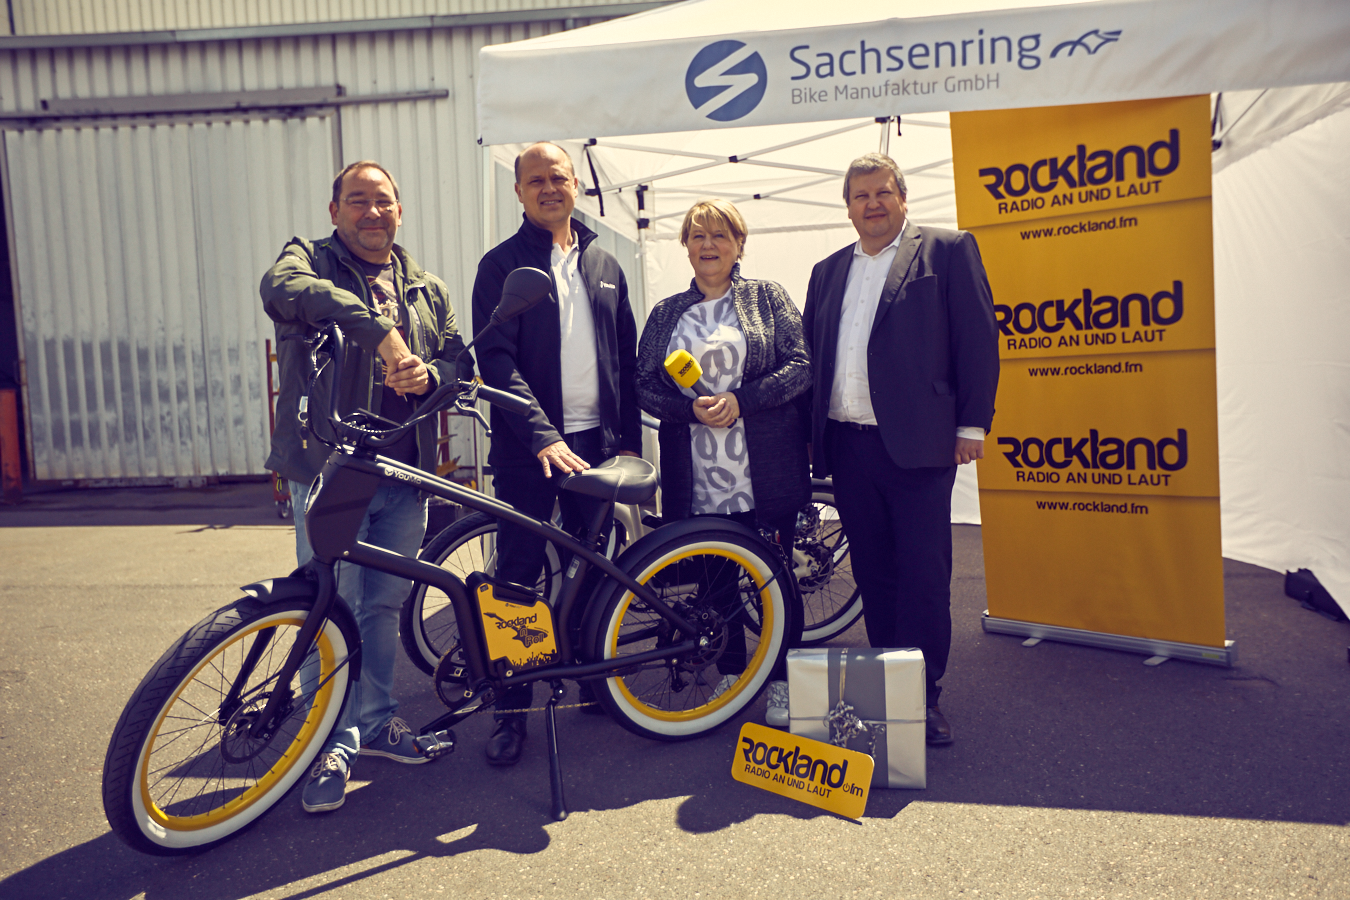 Der e-Cruiser im Rockland.fm Design von YouMo, wird im Werk der Sachsenring Bike Manufaktur GmbH an den glücklichen Gewinner übergeben übergeben.